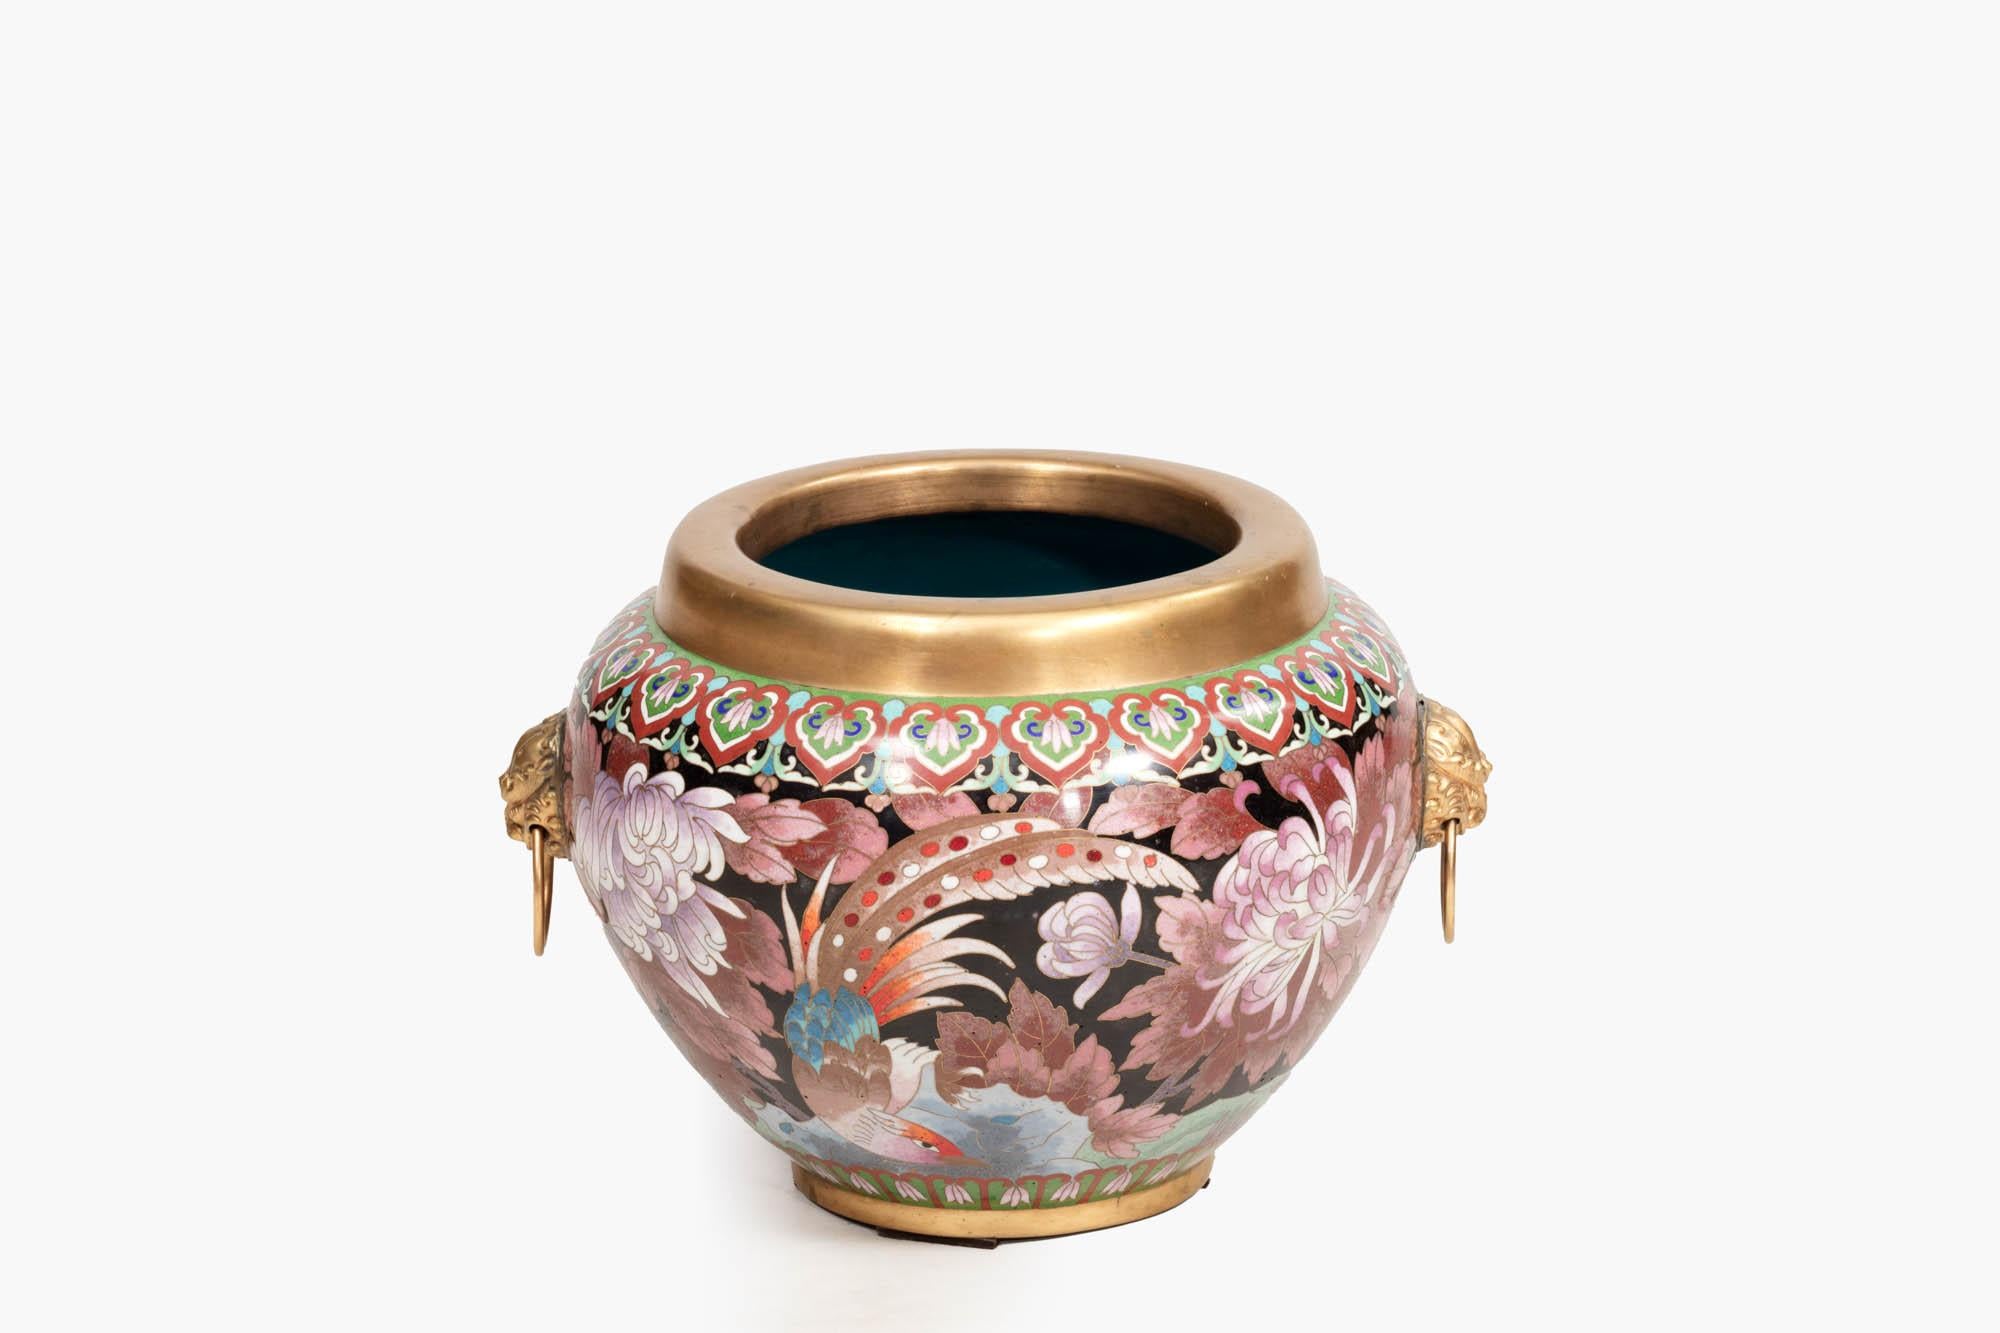 Vase cloisonné du XIXe siècle, richement décoré de motifs orientaux lumineux, de fleurs de chrysanthèmes et d'oiseaux. Surmonté d'un bord doré, et présentant un intérieur bleu vif, deux côtés sont flanqués de poignées dorées à masque de lion.

Le